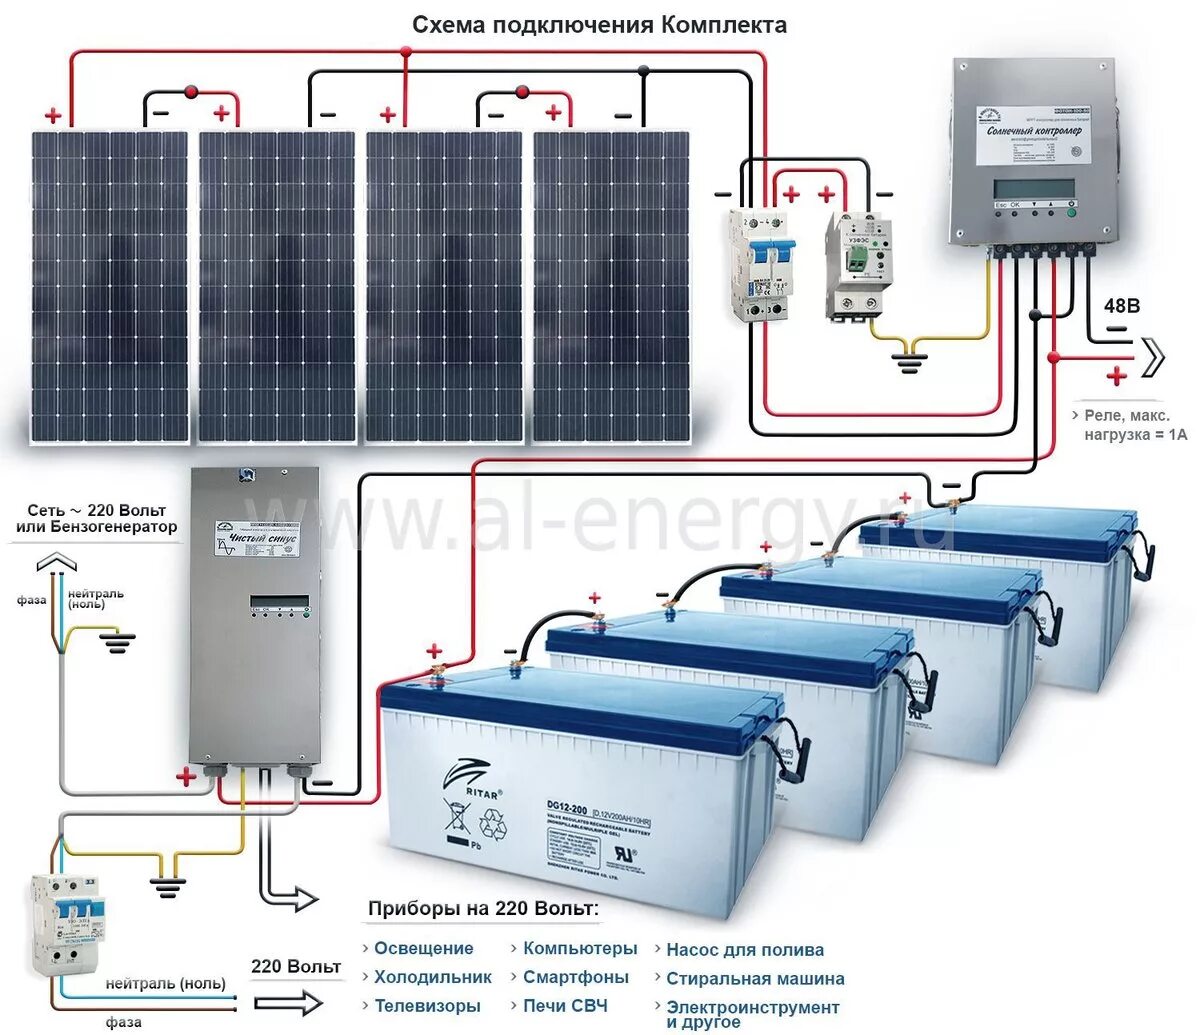 Сколько нужно солнечных батарей. Аккумуляторные батареи для подстанции 100 КВТ для солнечной панели. Солнечные батареи 8квт 380в. Солнечный батареи для дома 220 вольт 15 КВТ. Солнечная панель 220 вольт.